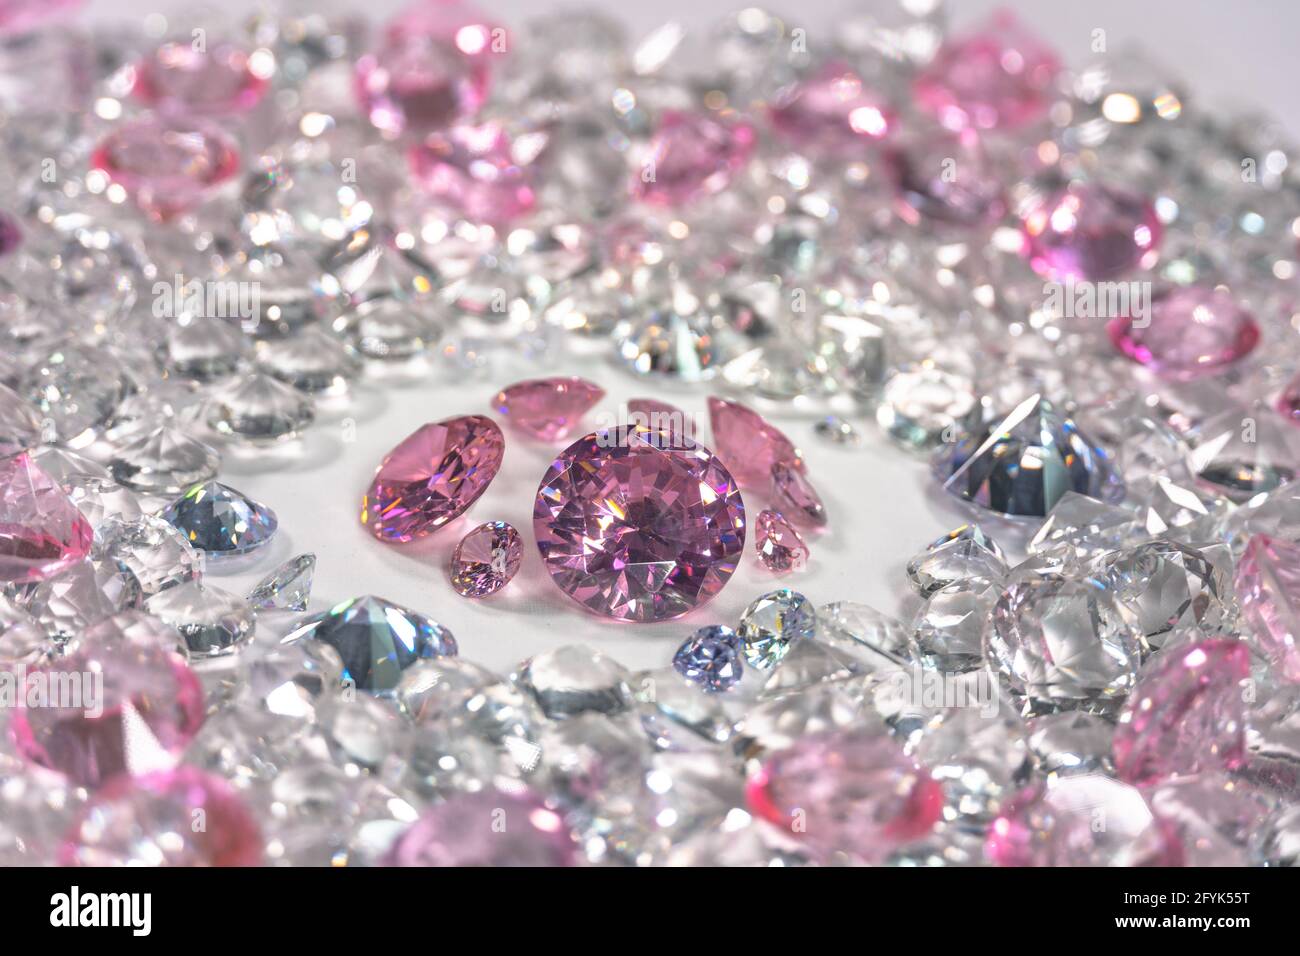 Nhóm hộp hồng hổ phách sáp xếp giữa các viên kim cương trắng là một tuyệt tác của nghệ thuật. Sự kết hợp giữa màu hồng tươi tắn và sắc trắng tinh tế sẽ đưa bạn đến một thế giới đầy sáng tạo và độc đáo, tạo cảm giác thoải mái và đầy đam mê.